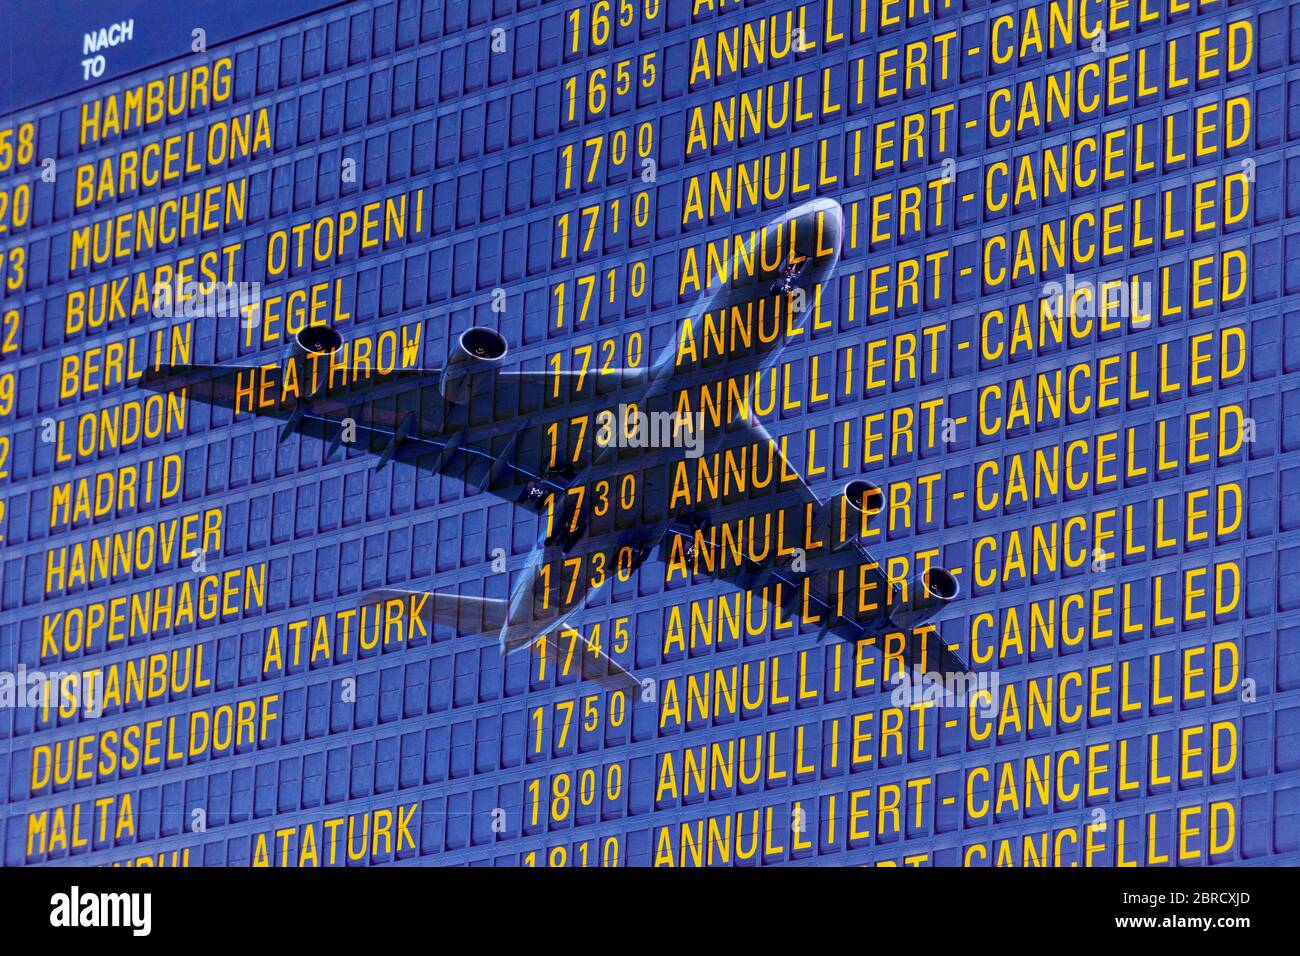 Composition numérique, arrivée et départ à l'aéroport, annulations de départ, vols annulés en raison de la crise corona, Allemagne Banque D'Images